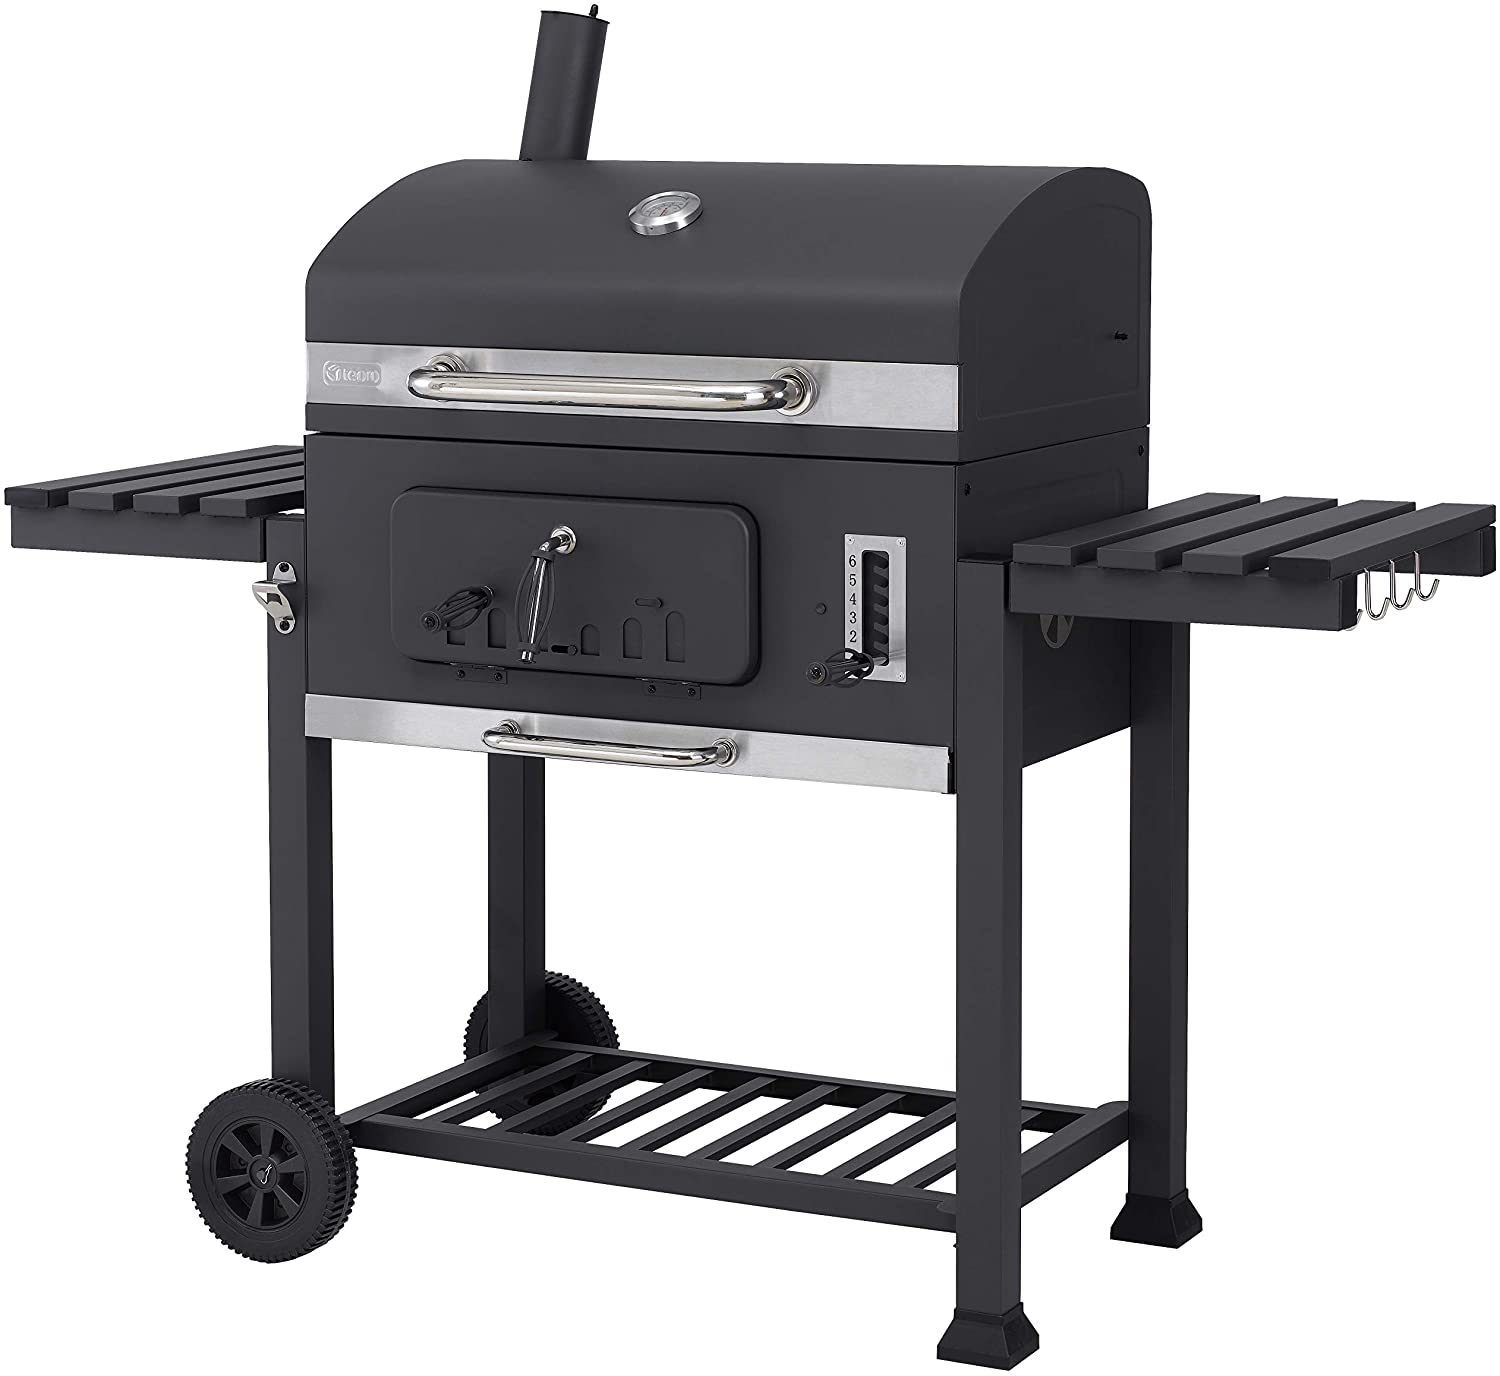 Tepro Toronto XXL 2019 Carrello per barbecue in acciaio INOX colore Antracite 🥓 Barbecue a Carbonella🍗 I 5 migliori barbecue a carbonella 2020